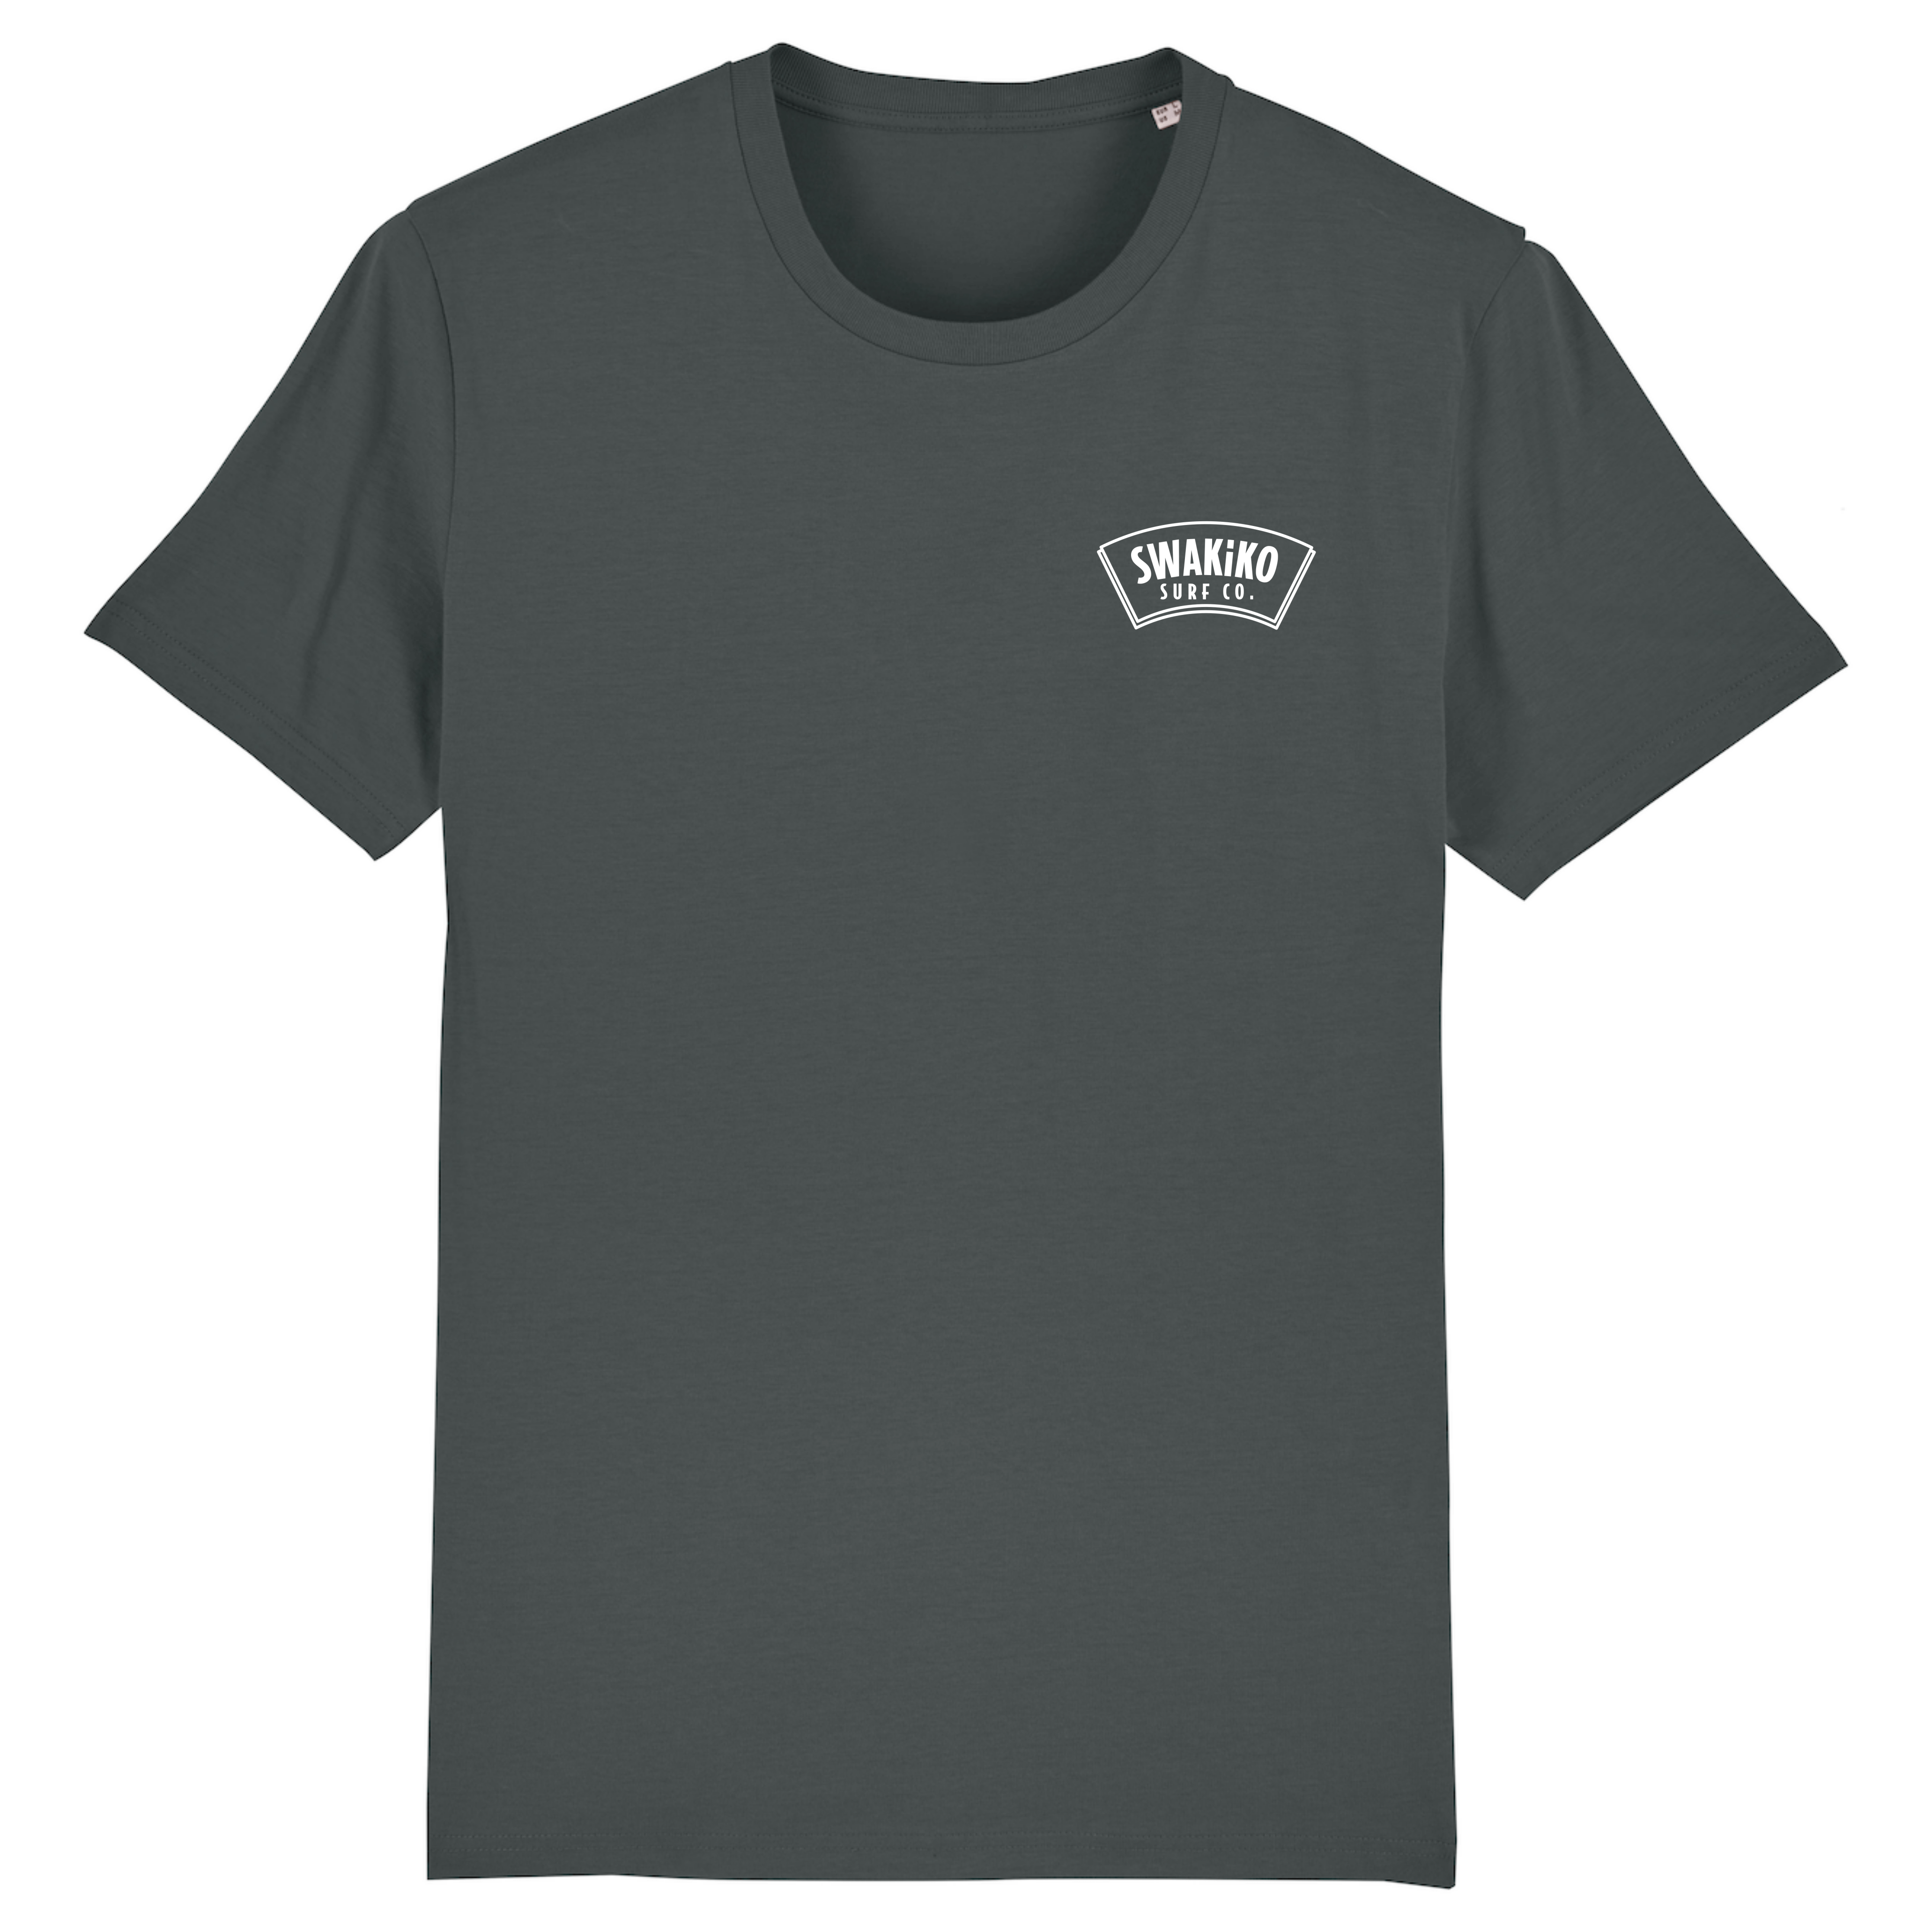 Antraciet surf shirt met SWAKiKO logo op de borst